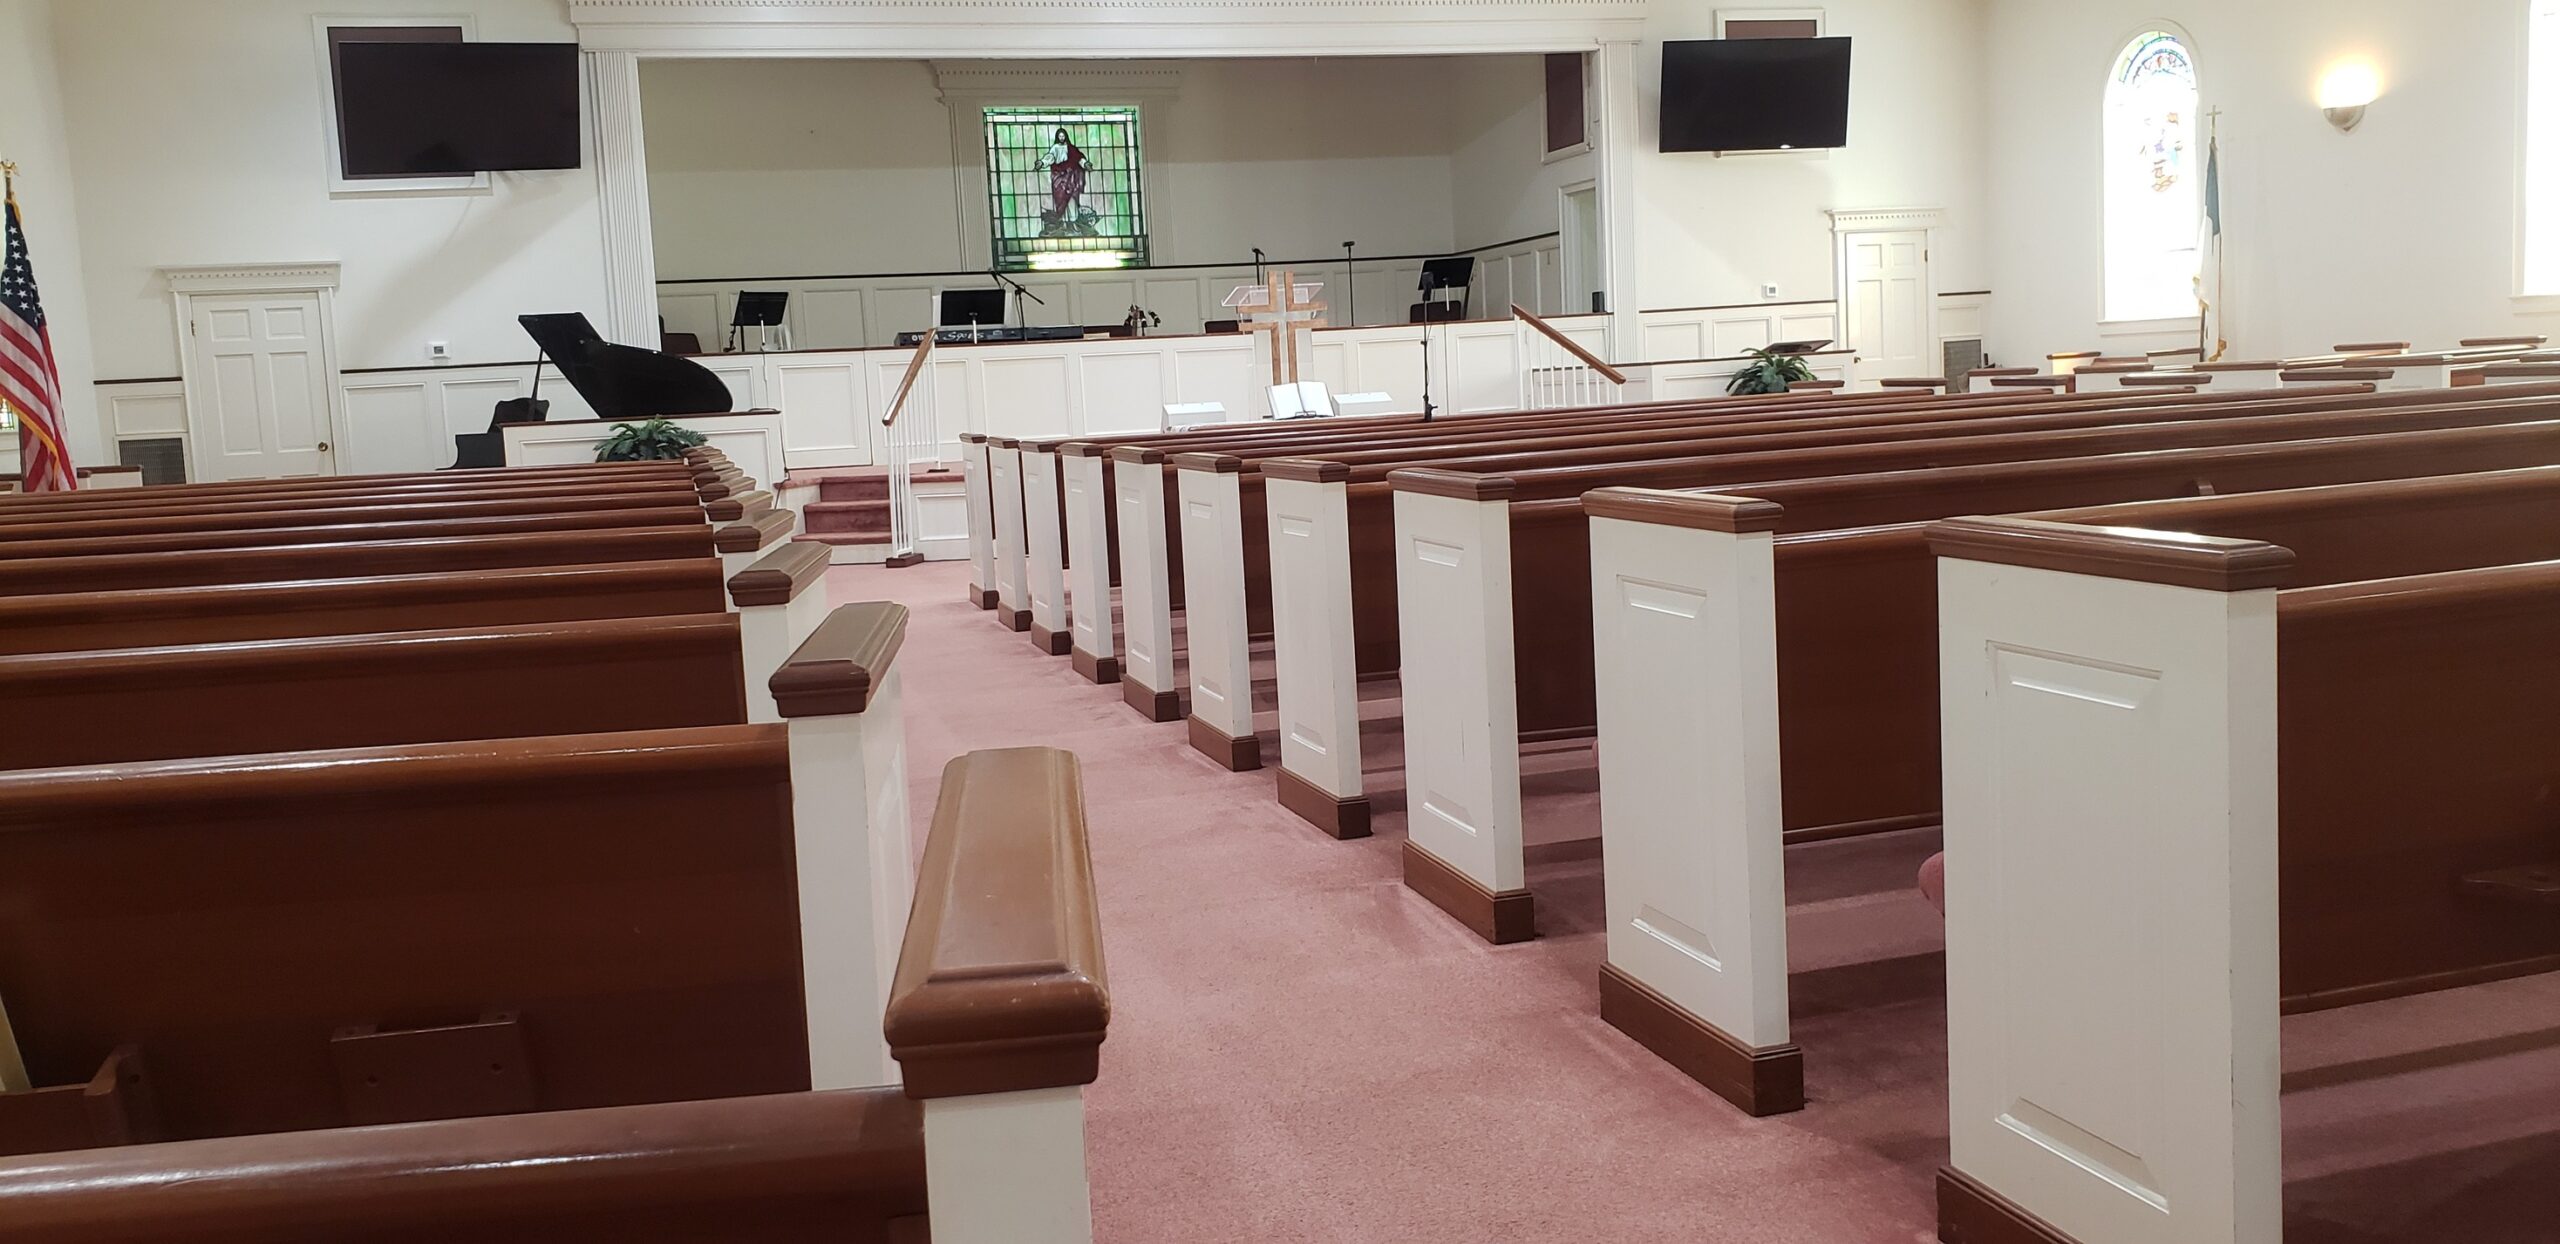 Faith Baptist Church: A Testament to Revitalization